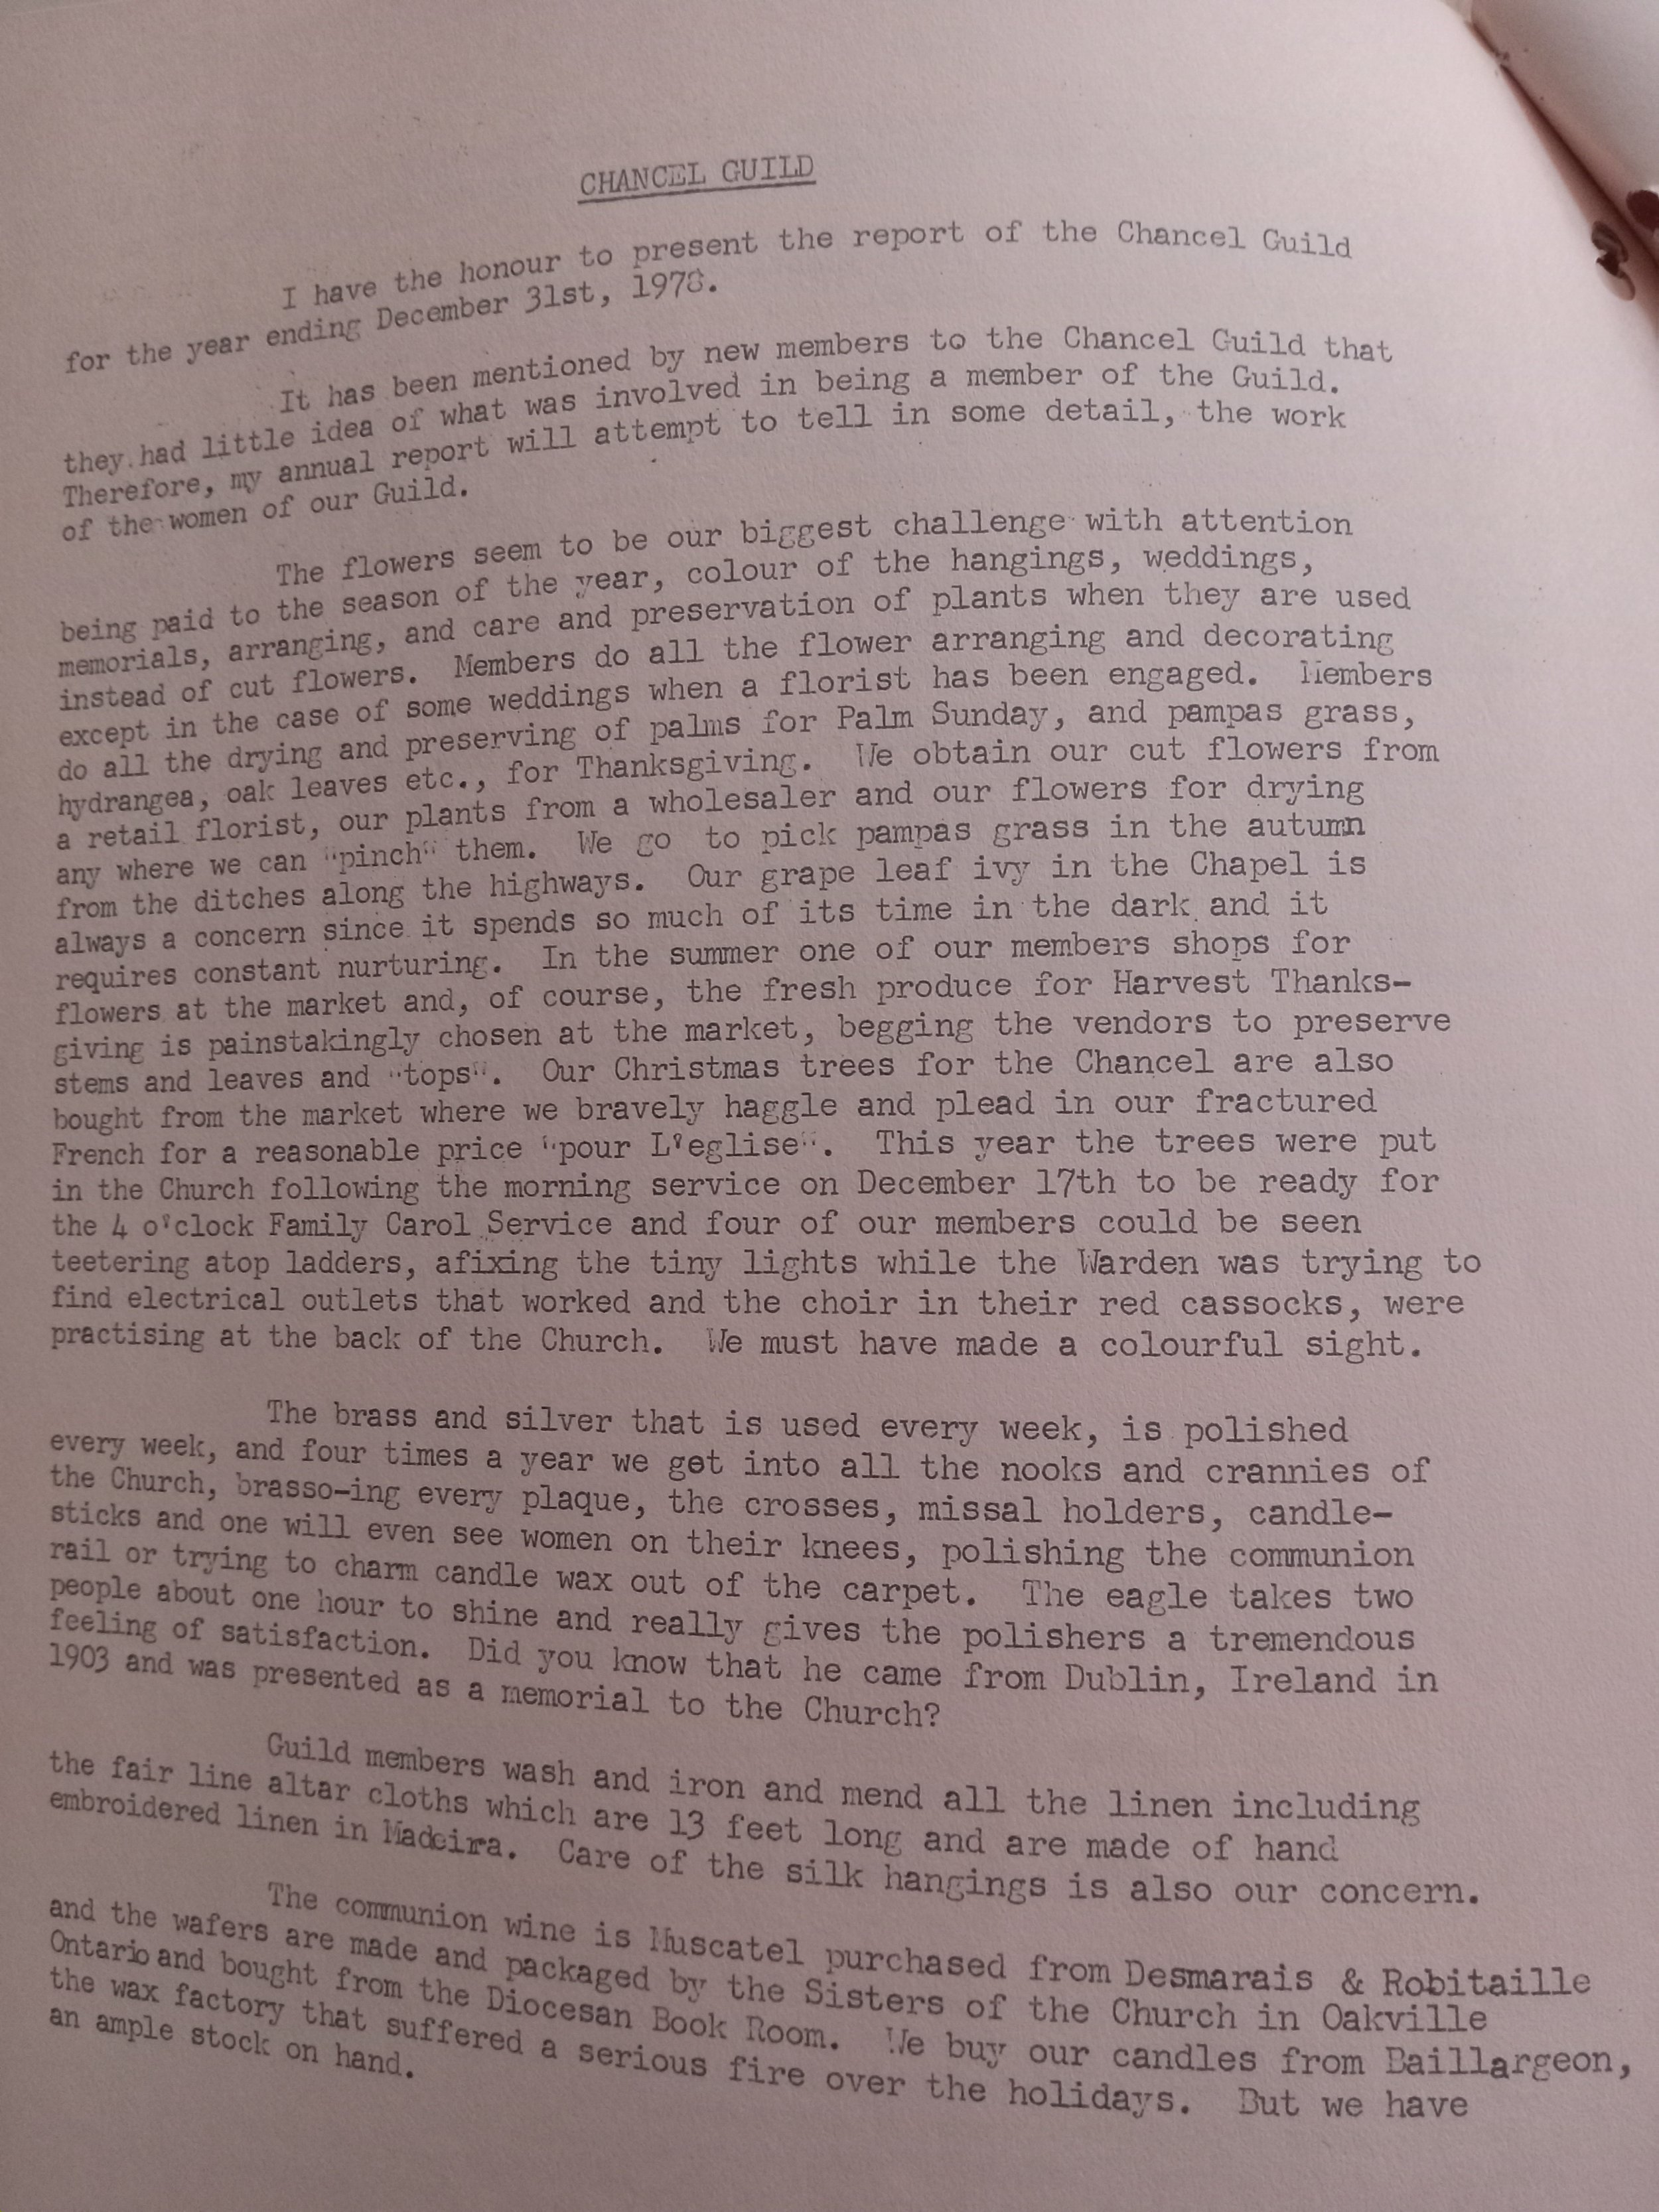 1979 Chancel Guild Report.jpg